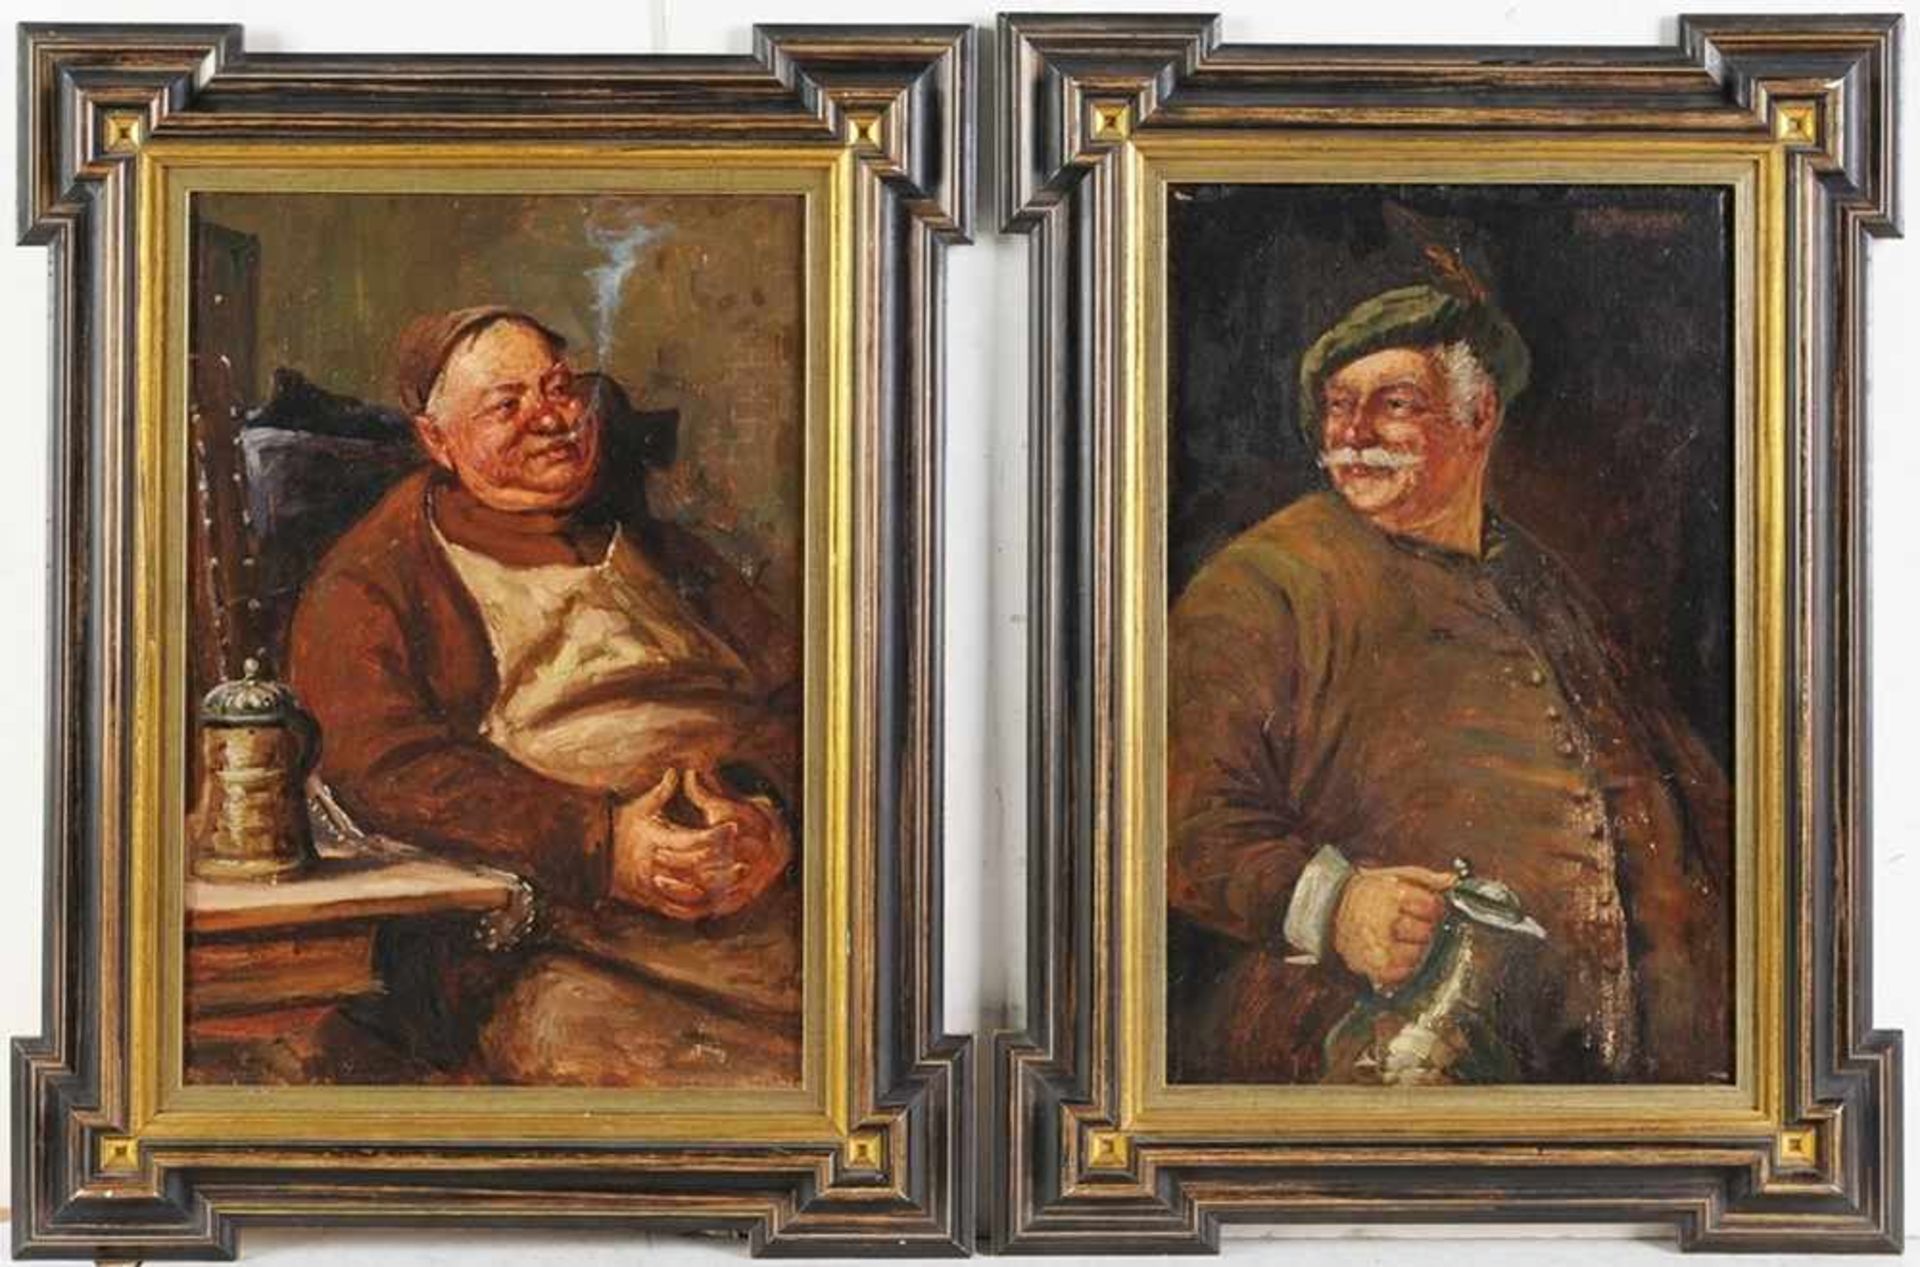 Bergegger, Jos. (Münchner Maler, 1. H. 20. Jh.) Öl/Malpappe. Beleibter Bauer mit Schankkrug.